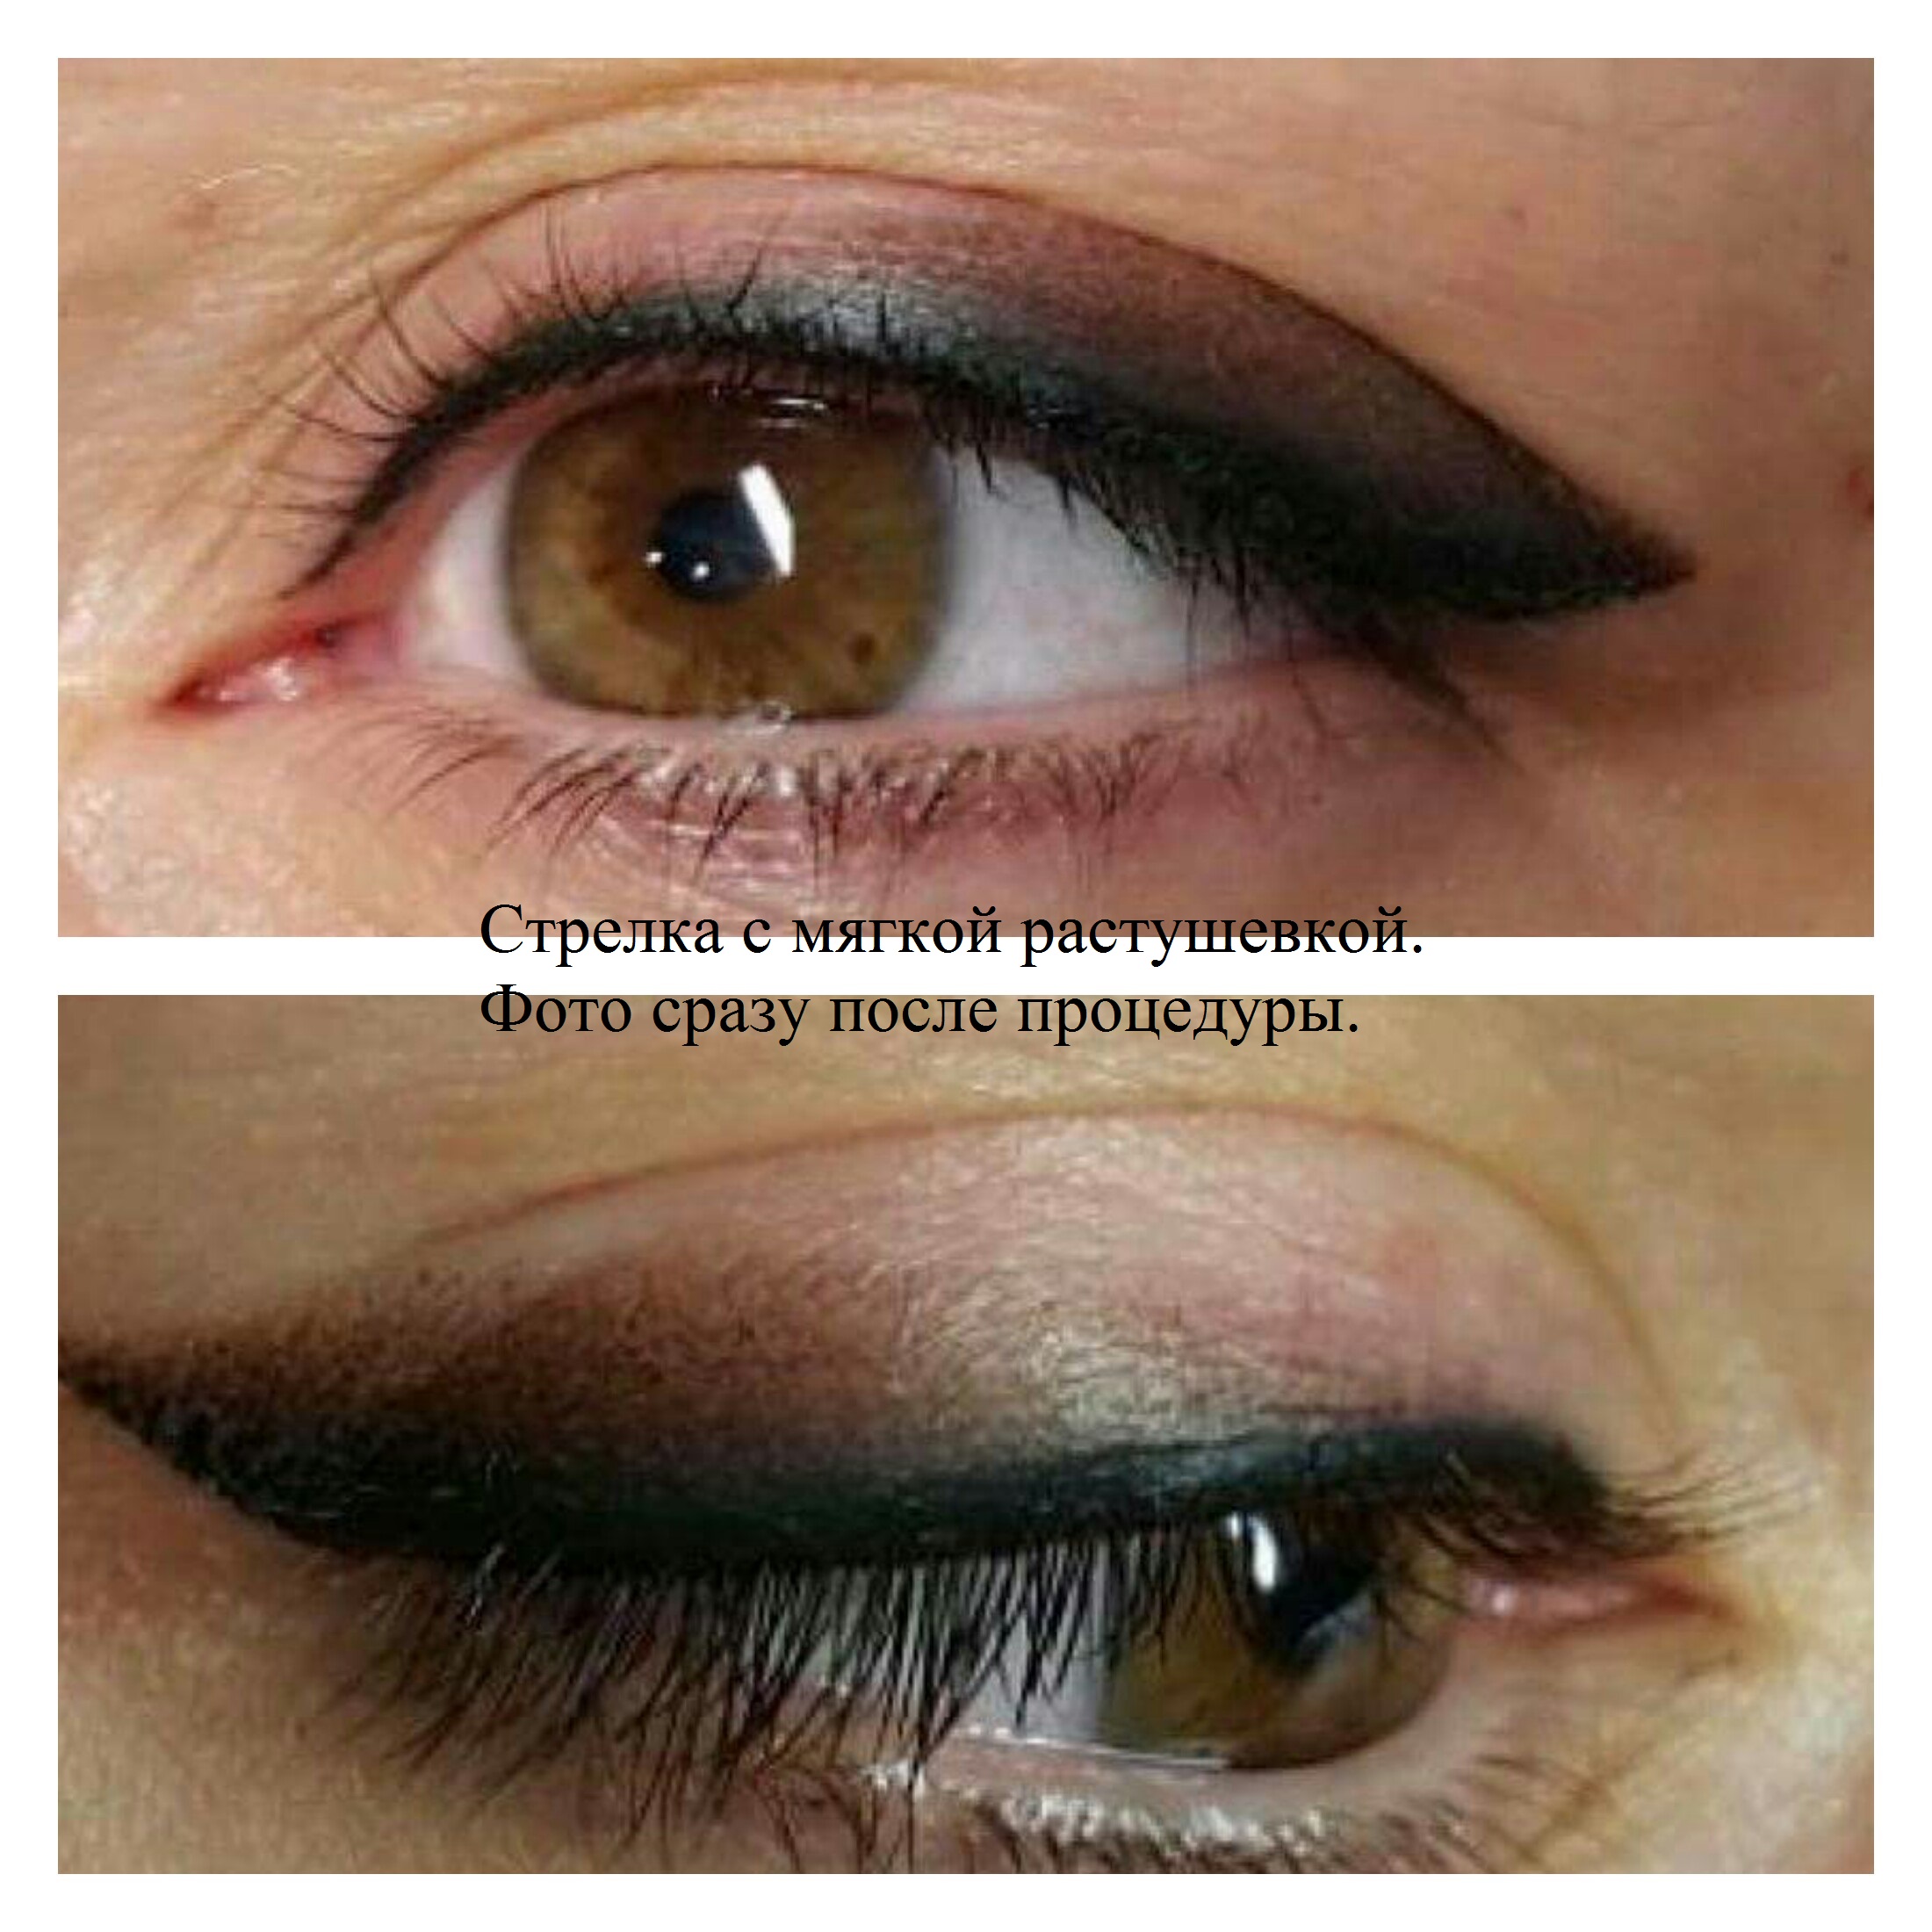 Татуаж стрелки на глазах с растушевкой: фото и процедура перманентного макияжа глаз, советы по уходу и противопоказания